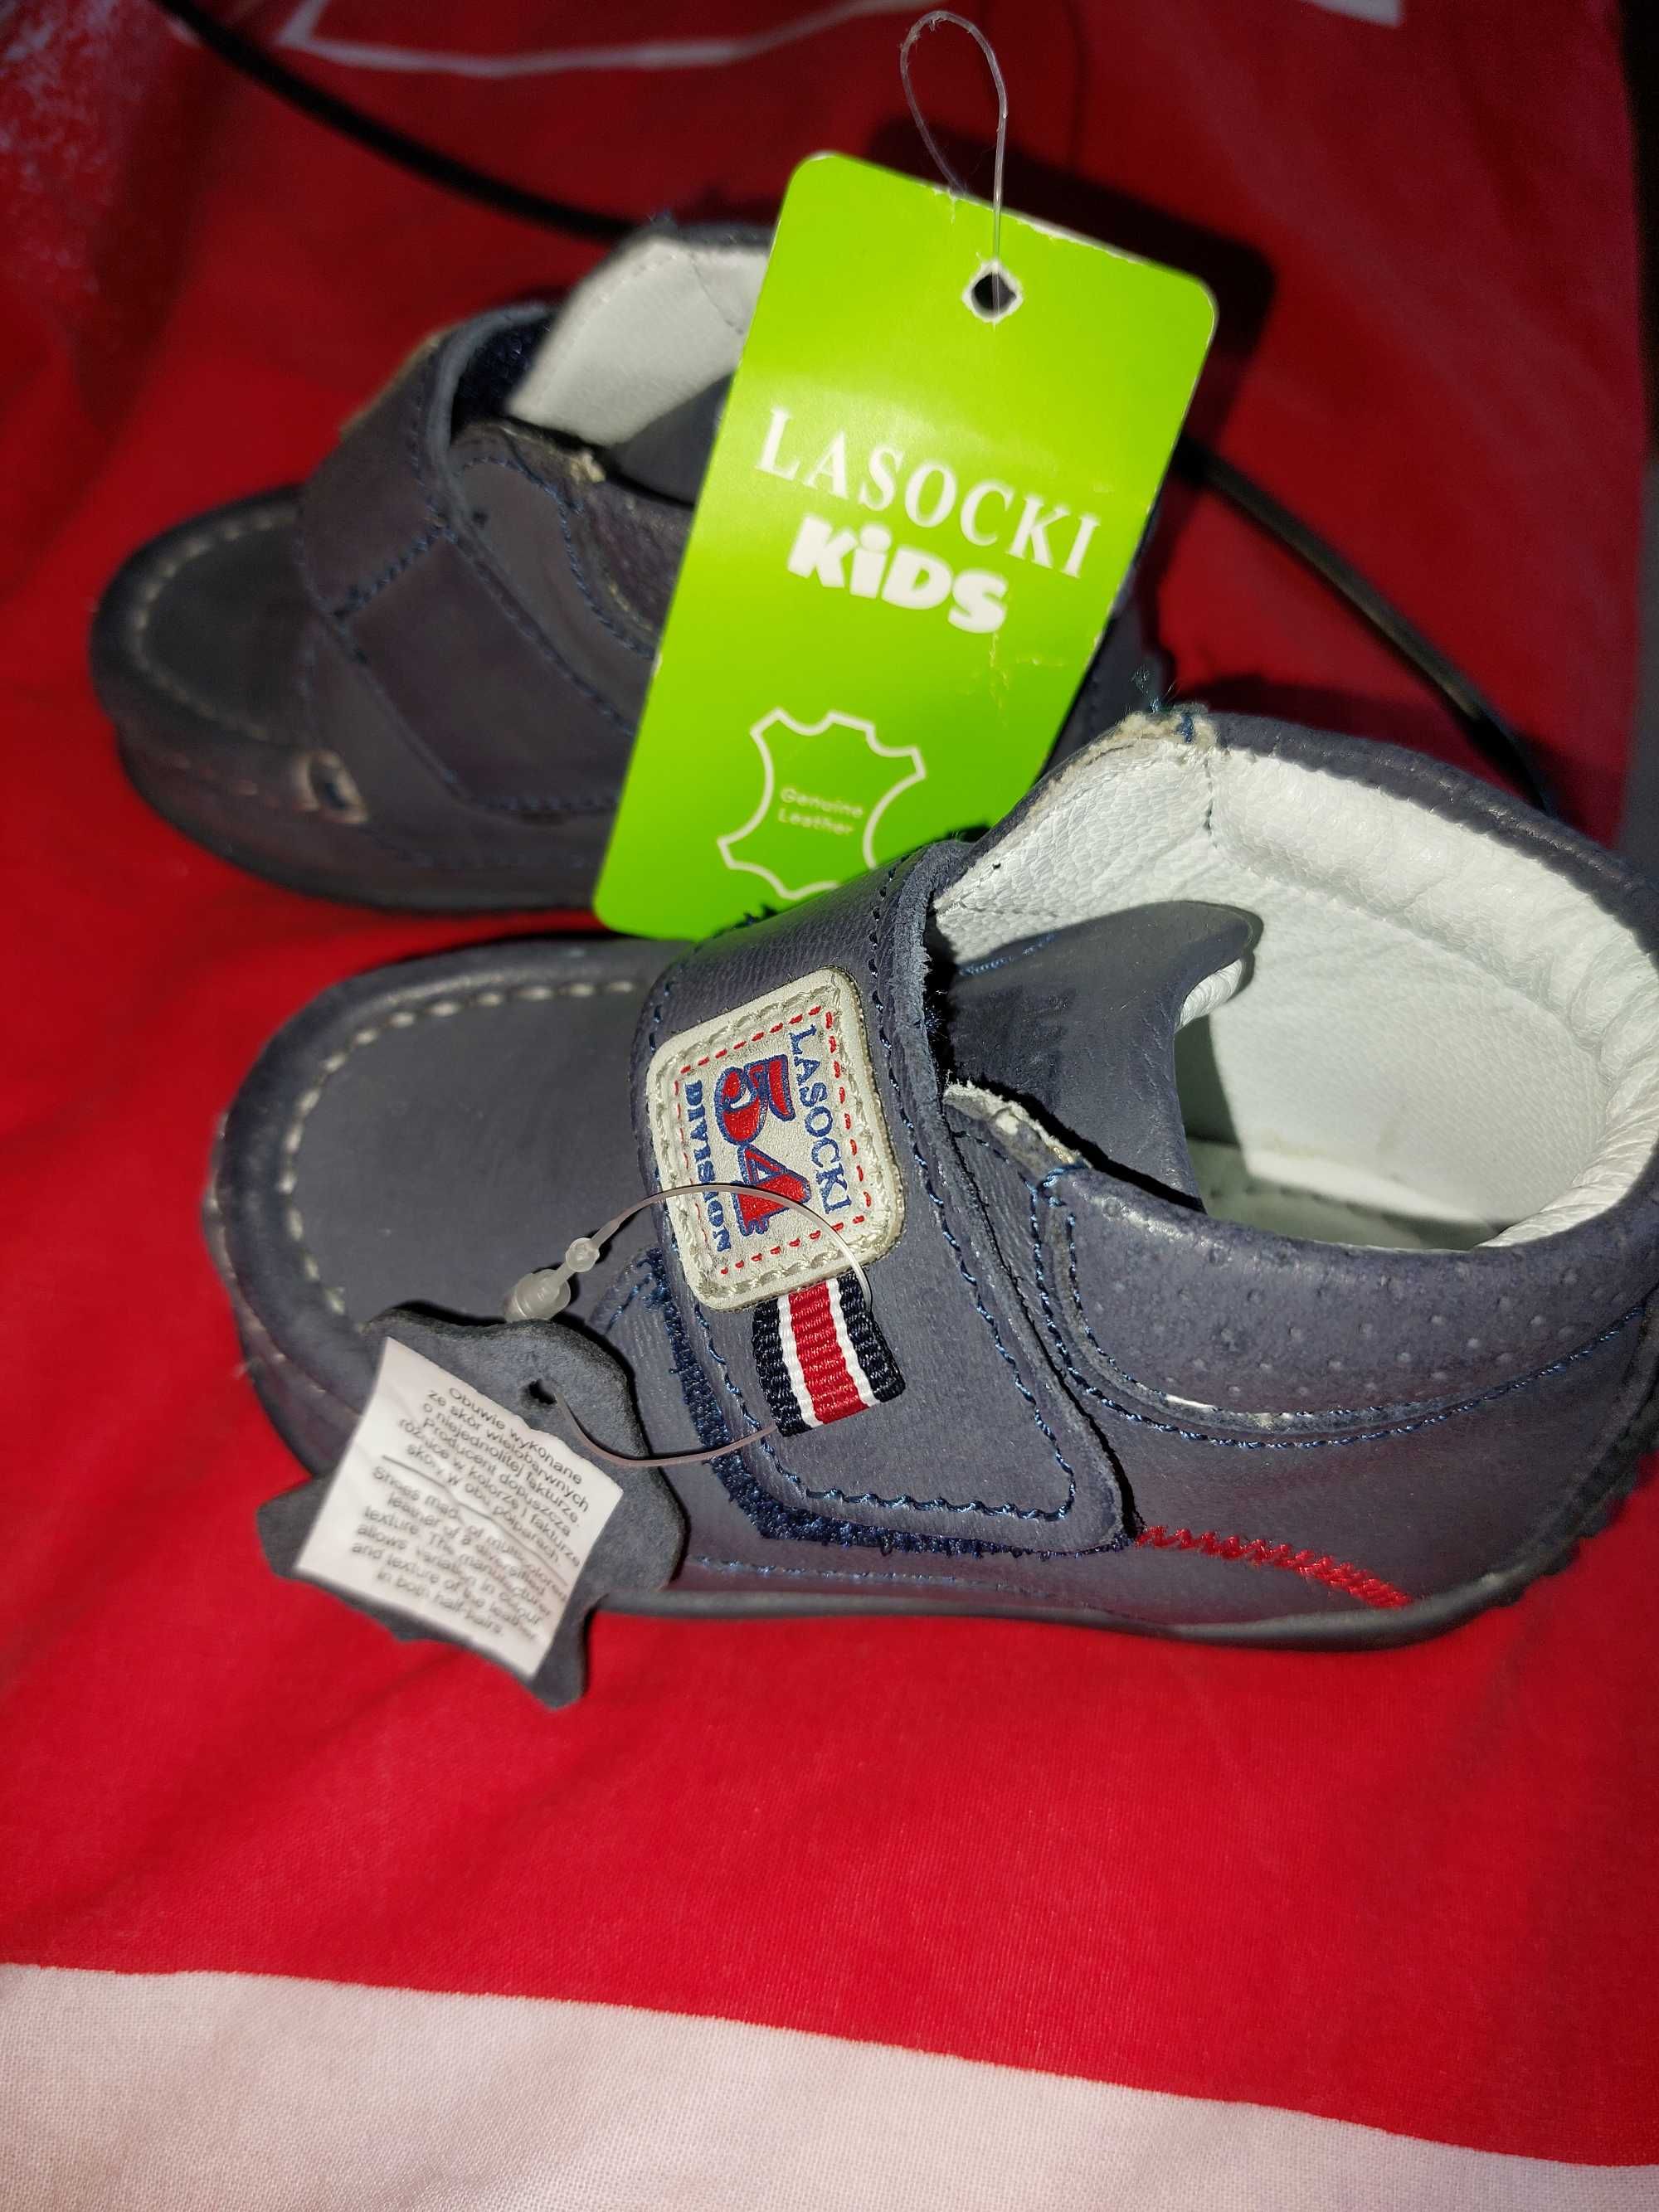 Vand pantofi bebelusi noi- cu eticheta